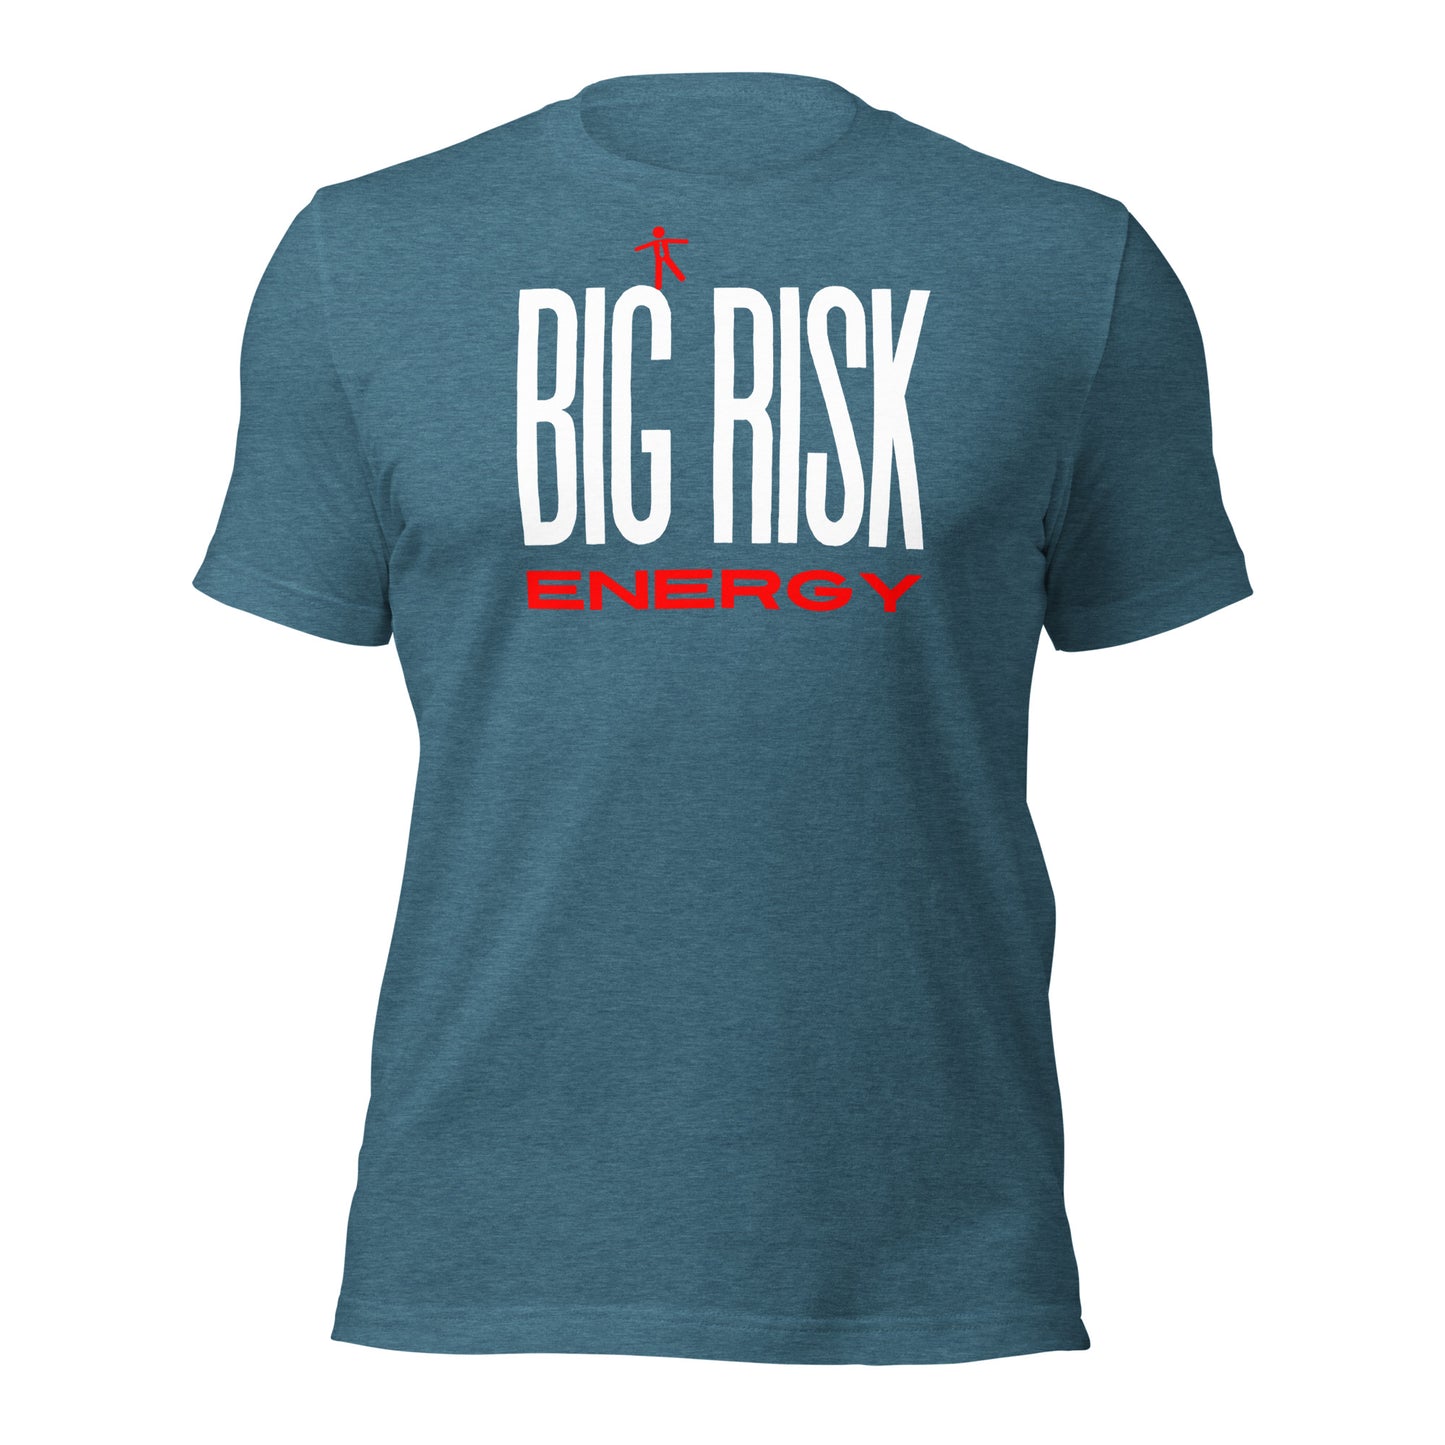 Big Risk Energy T-shirt for Entrepreneurs